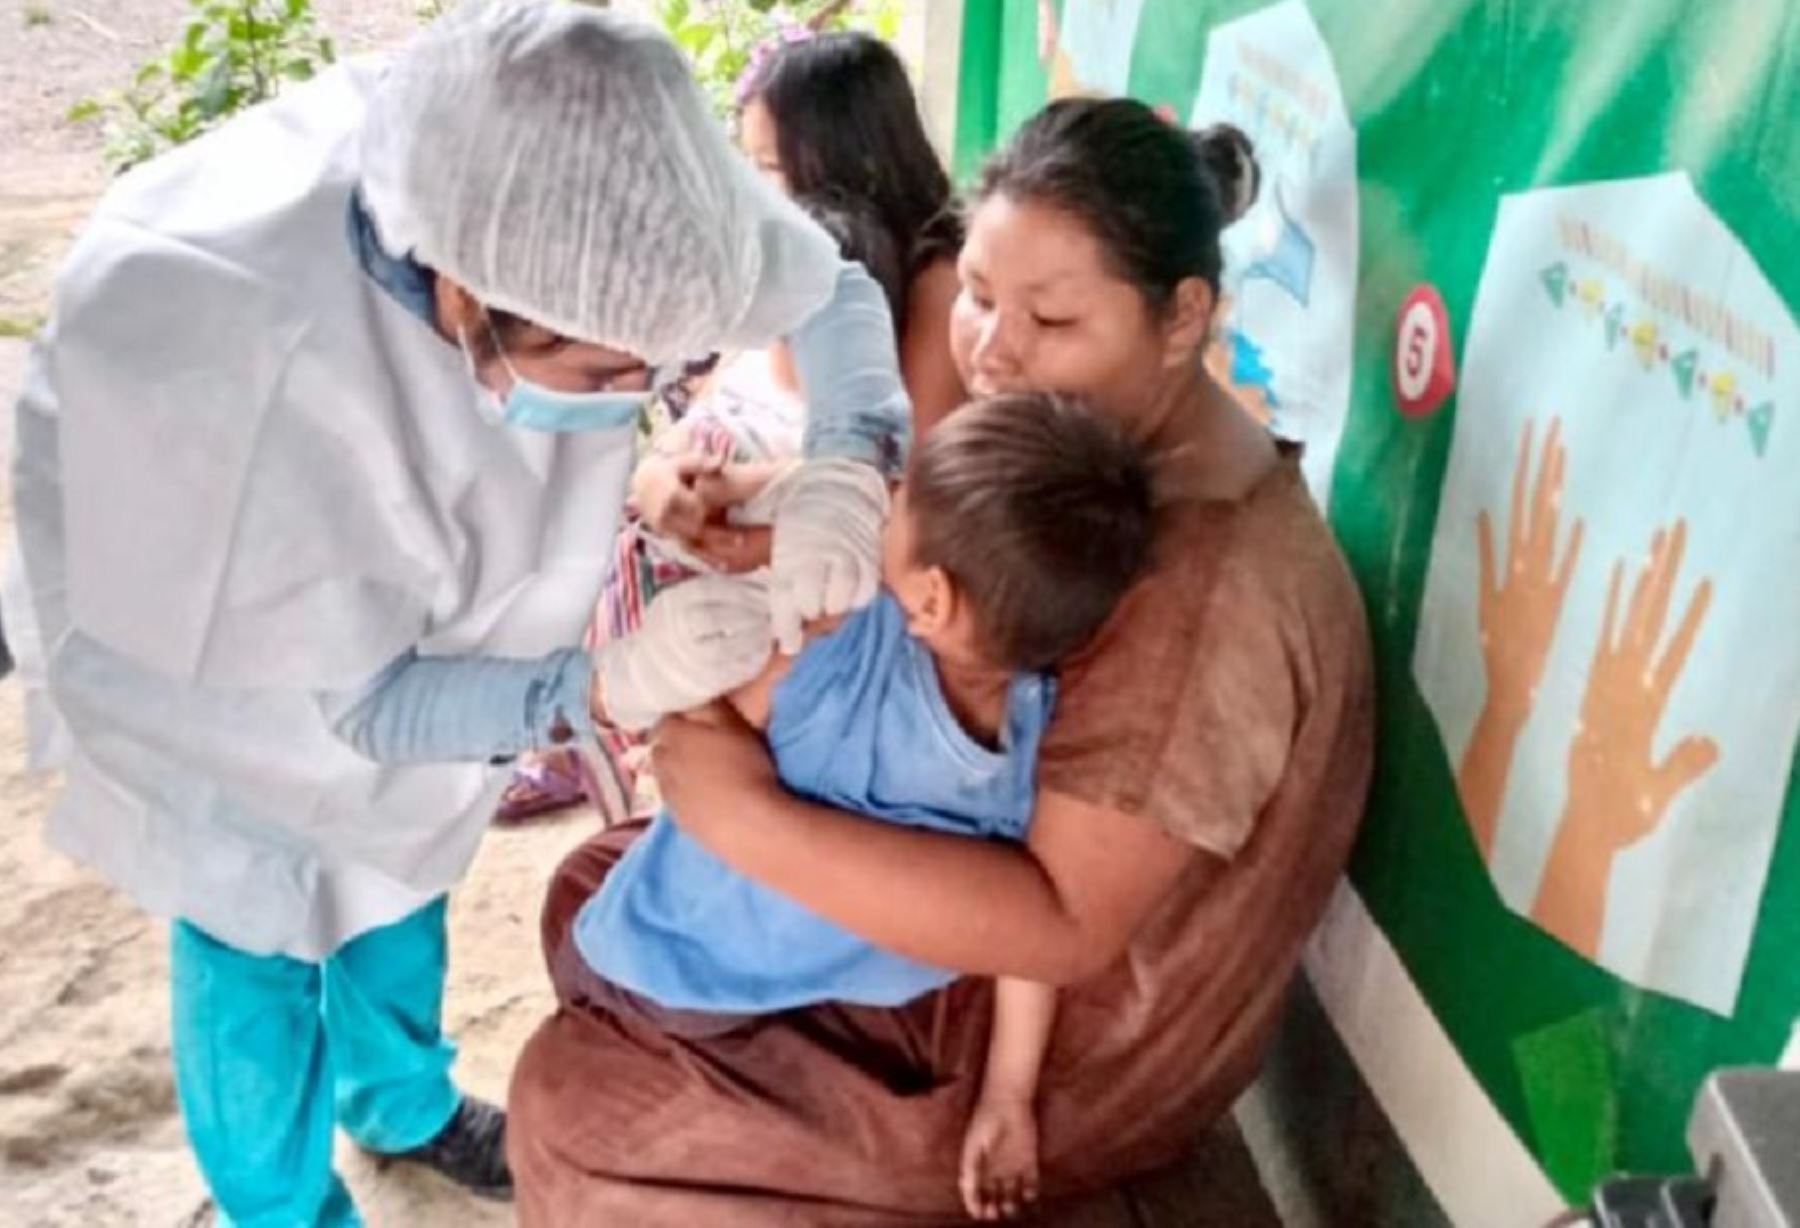 La campaña de vacunación es gratuita y busca proteger con tres dosis a 14,911 personas en total de las comunidades indígenas de las regiones Amazonas, Cusco, Loreto, Ucayali, Ayacucho, Madre de Dios, Junín y Pasco.